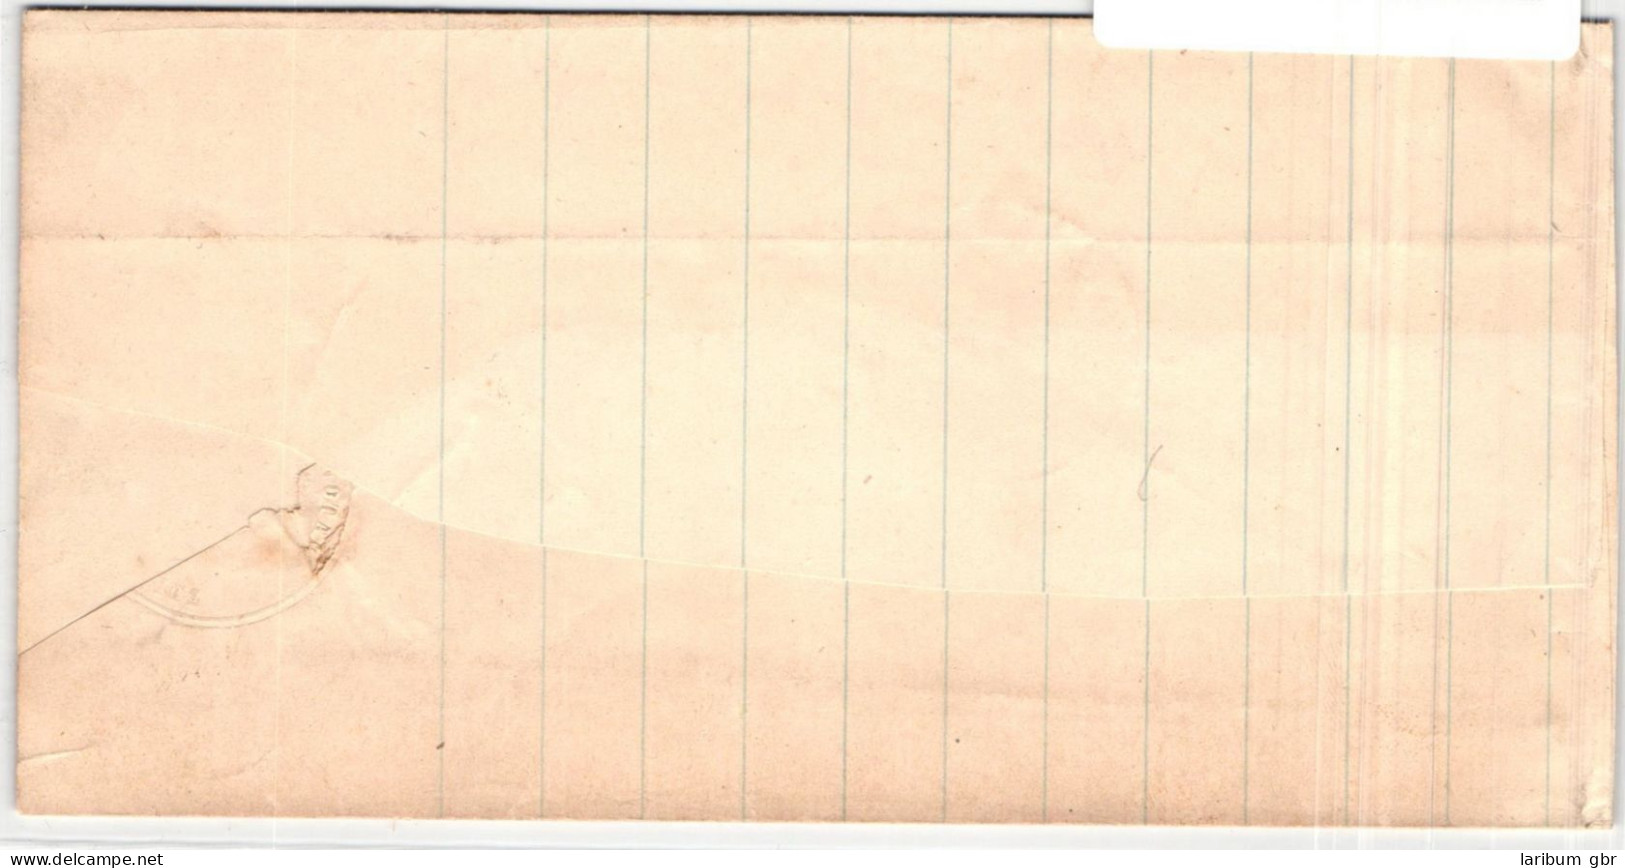 Baden 18 Auf Brief N 164 "Wandernde Eisenbahn", #JS802 - Cartas & Documentos